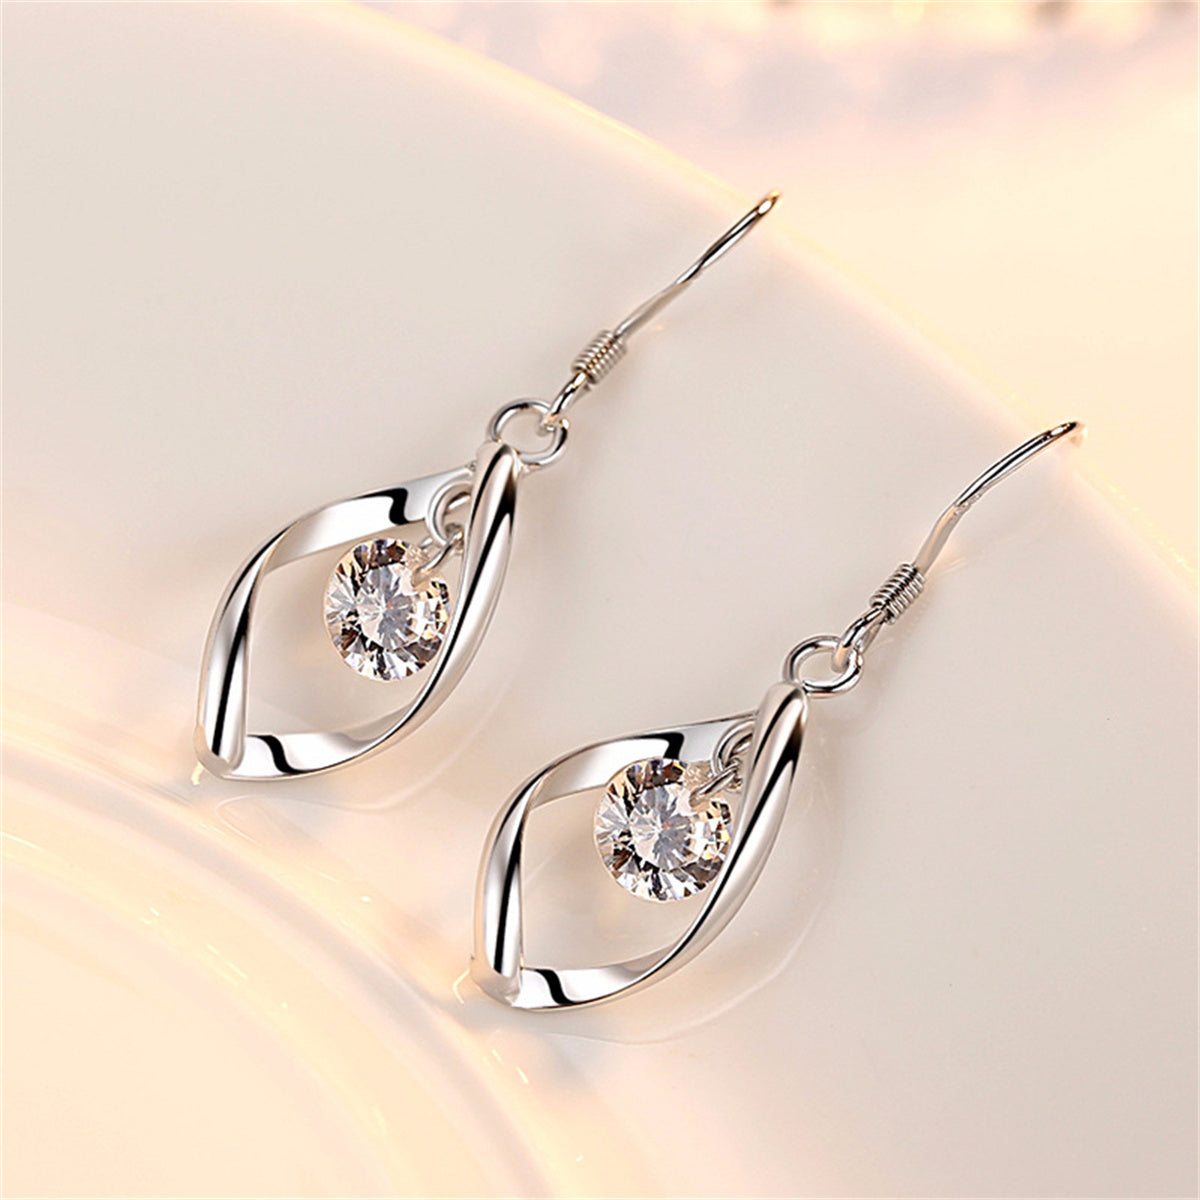 Zircon Silver Earrings Women's Temperament Tassel Hook Twist Fashion Earrings